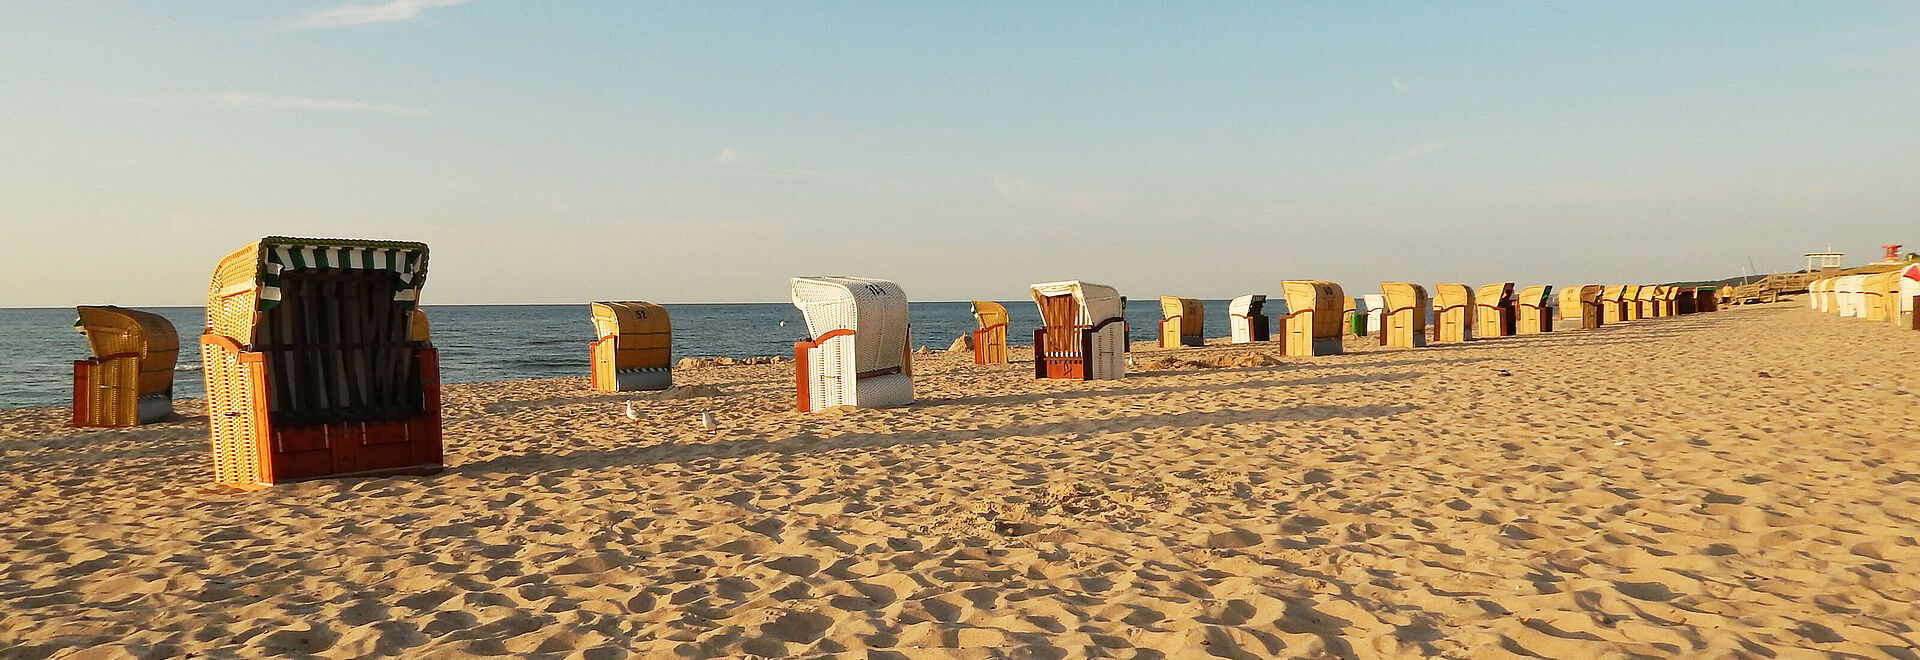 Weissenhäuser Strand – Strandkorb an der Ostsee